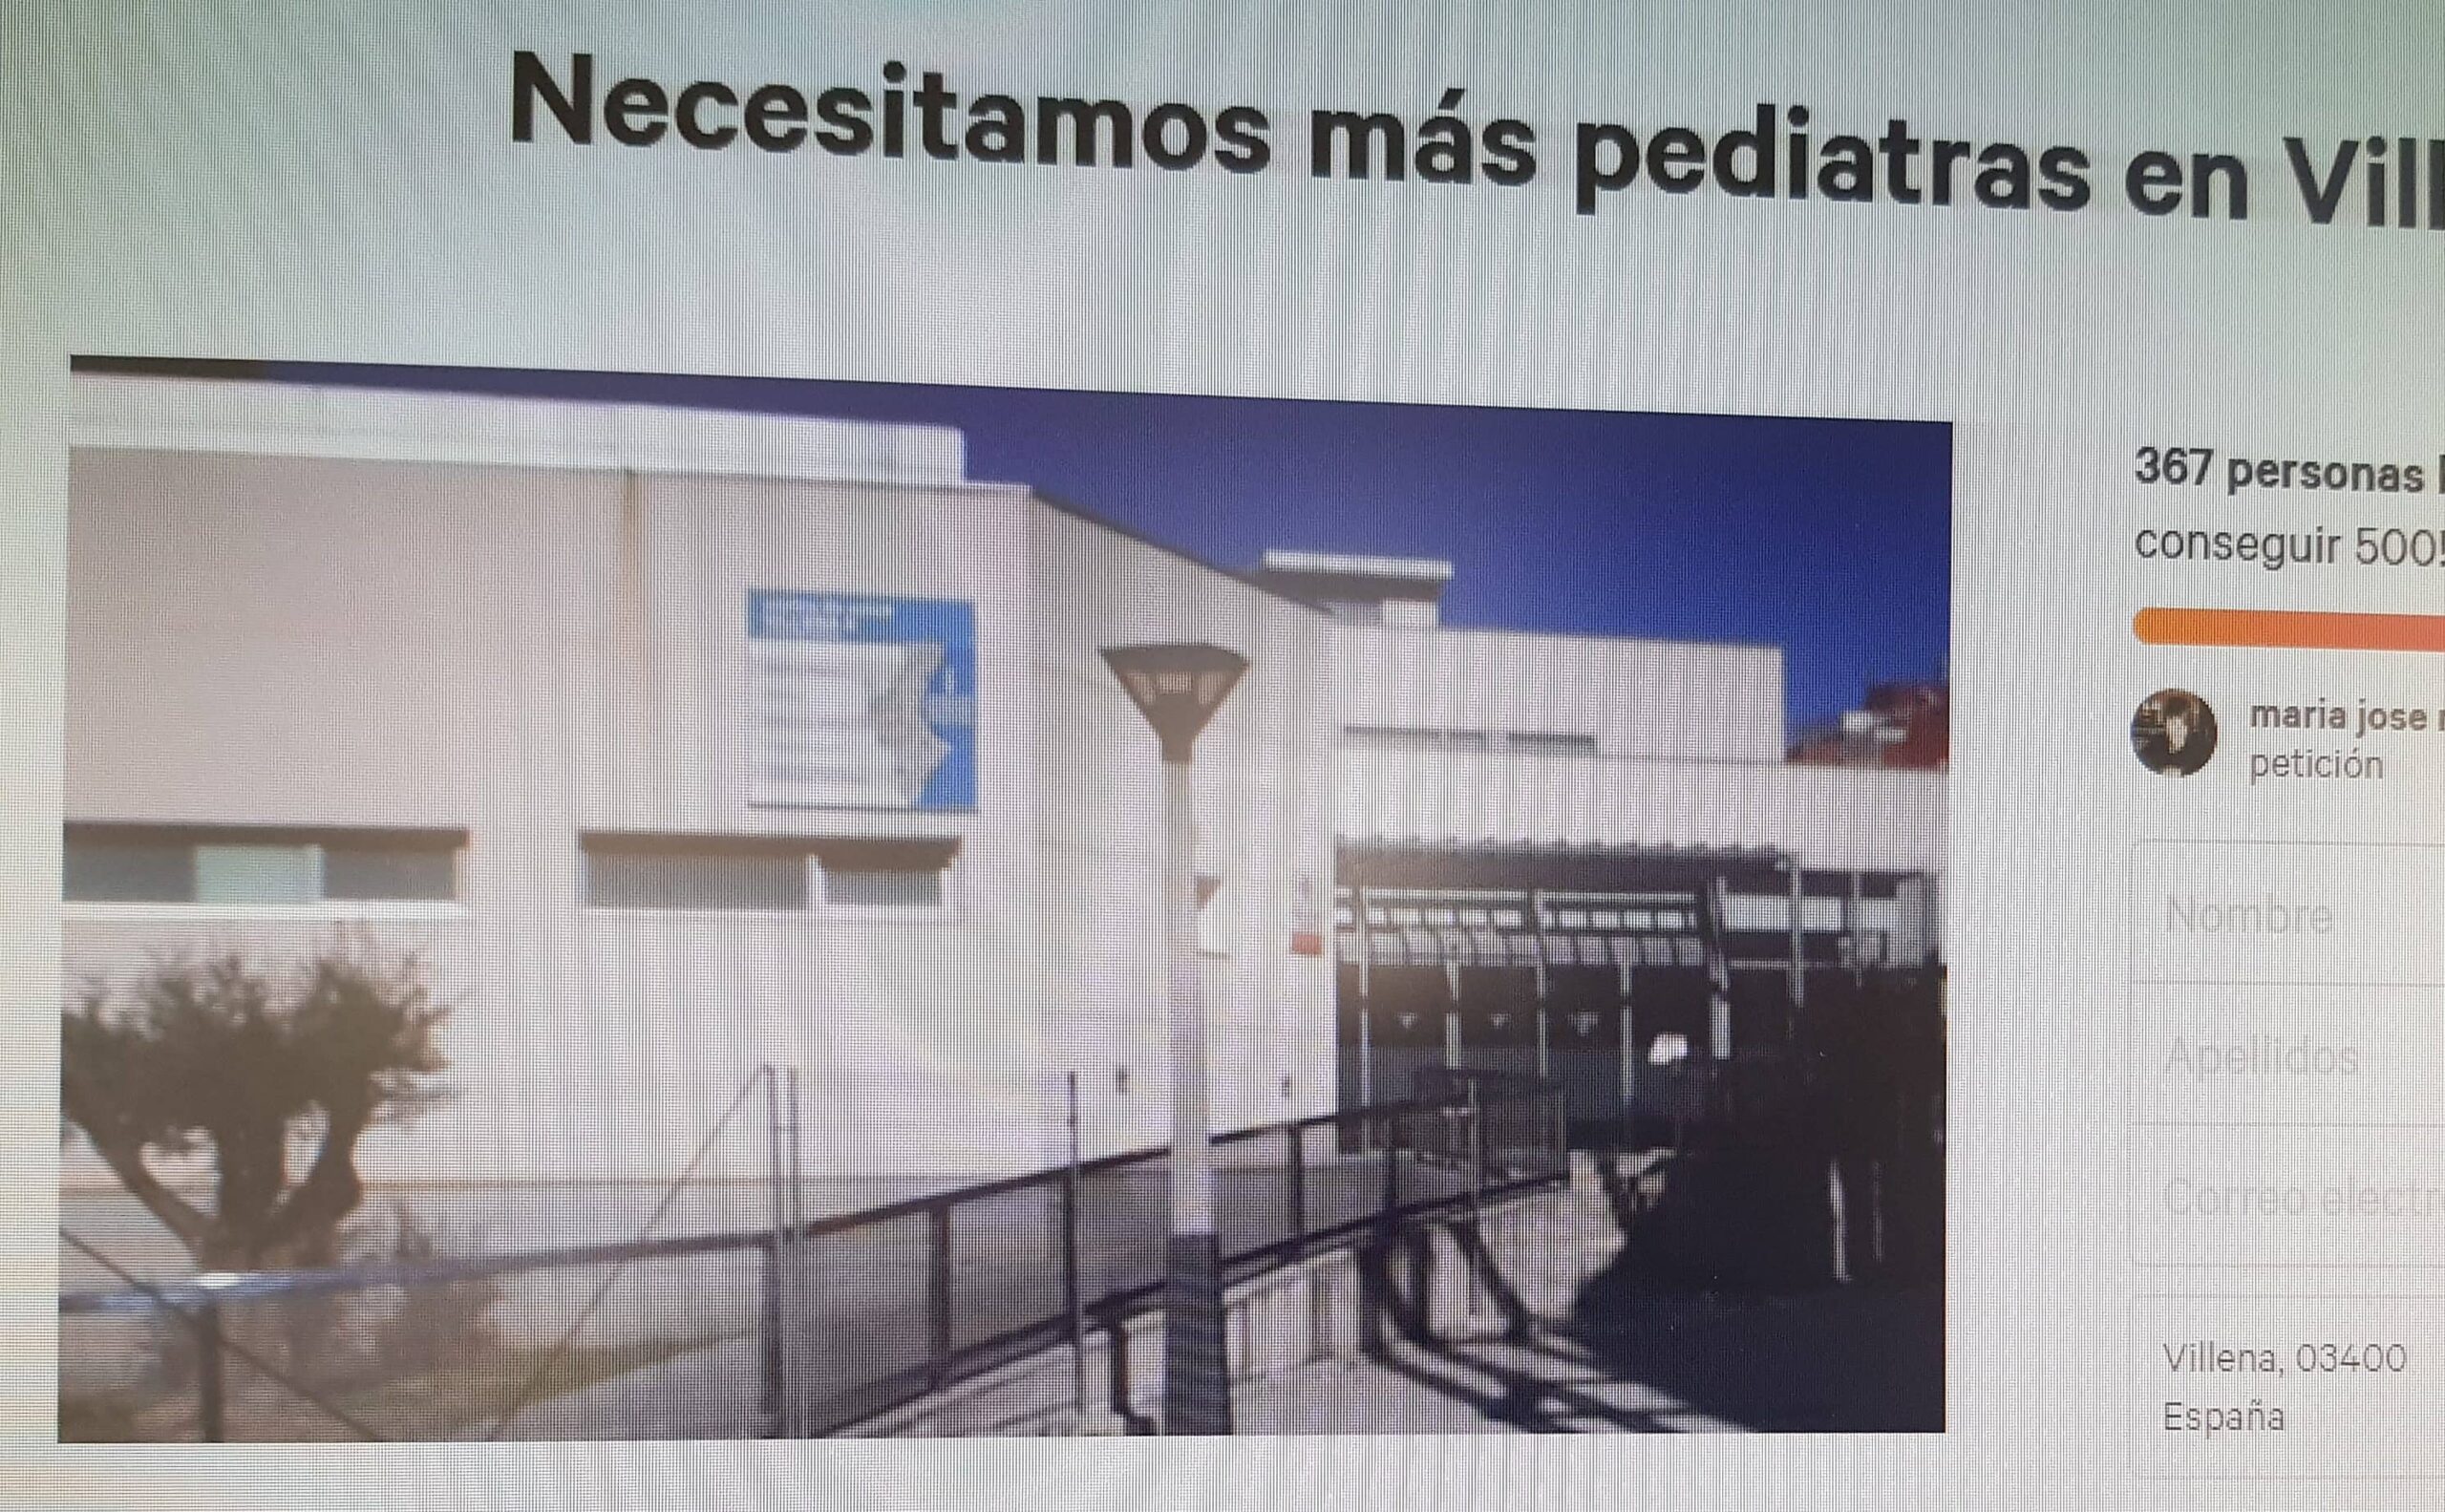 Inician una campaña para demandar más pediatras en Villena